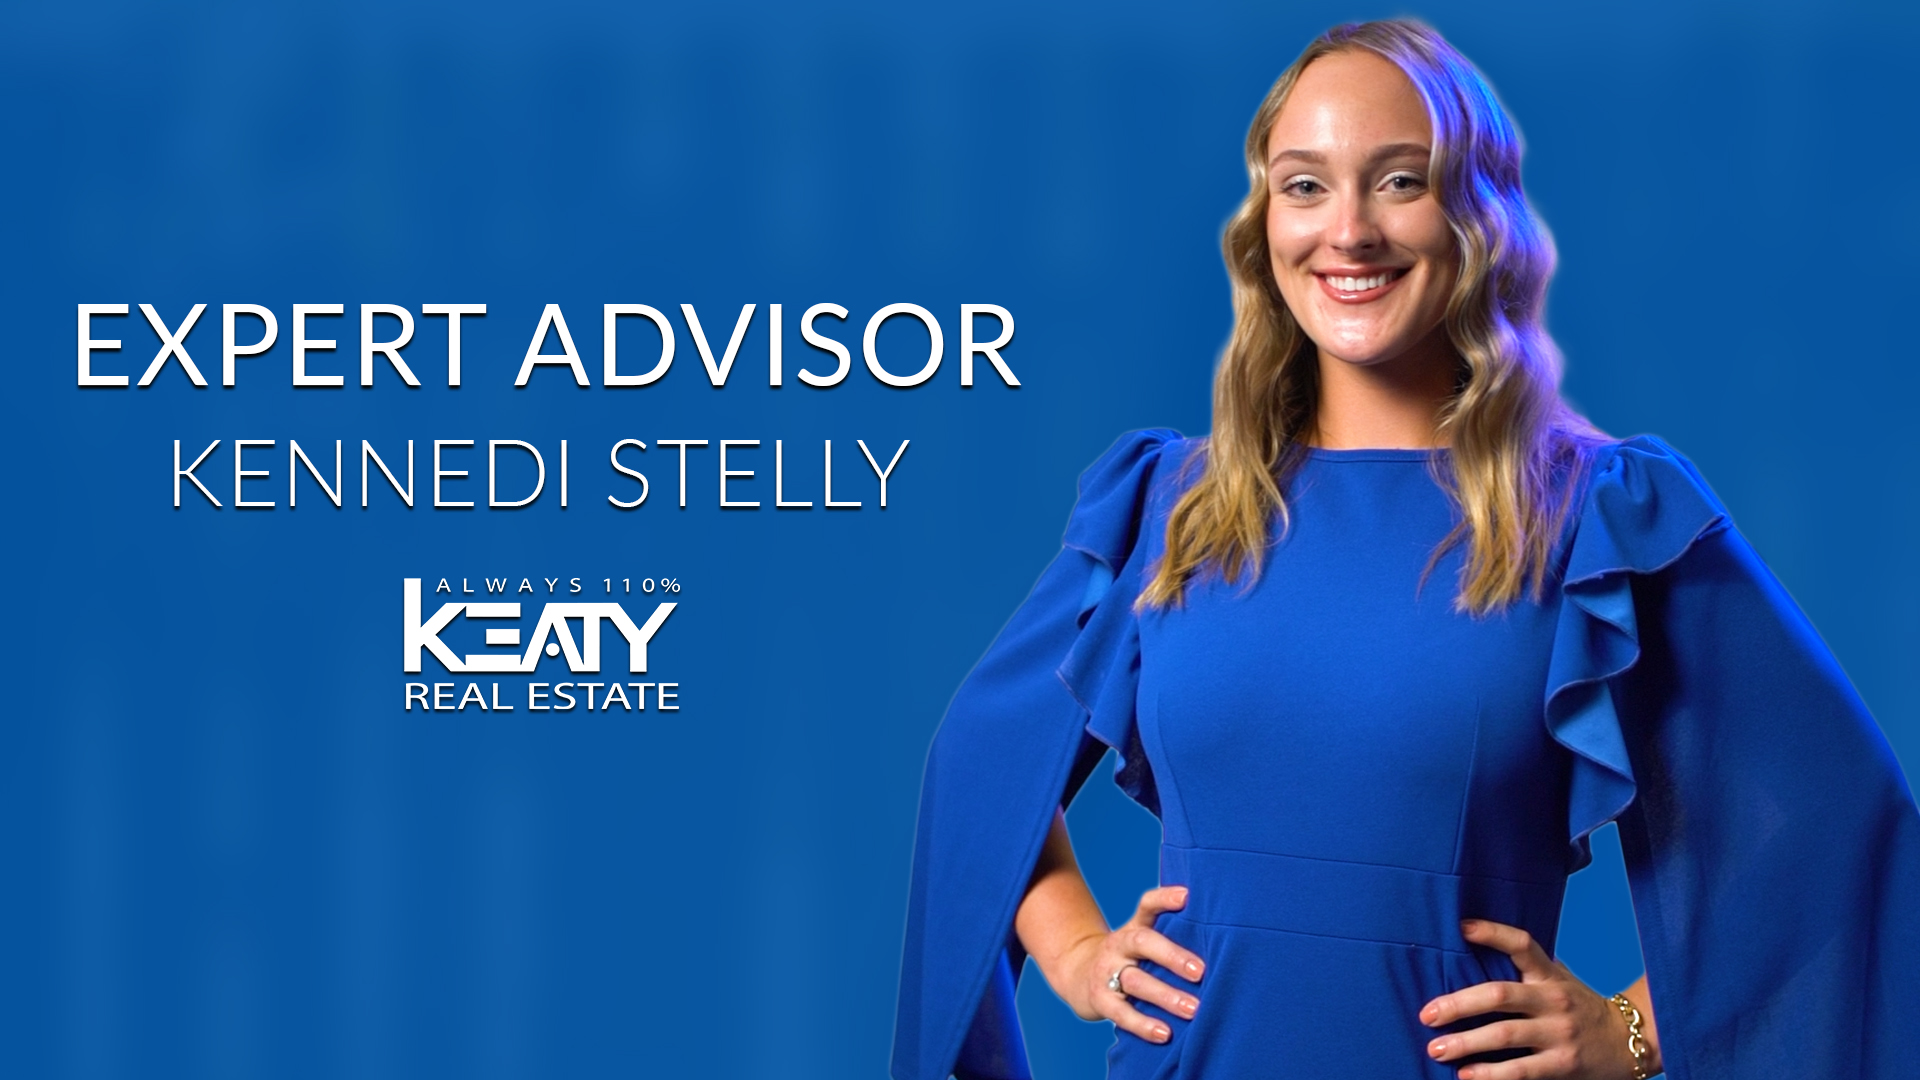 The Keaty Real Estate Expert Advisors: Kennedi Stelly